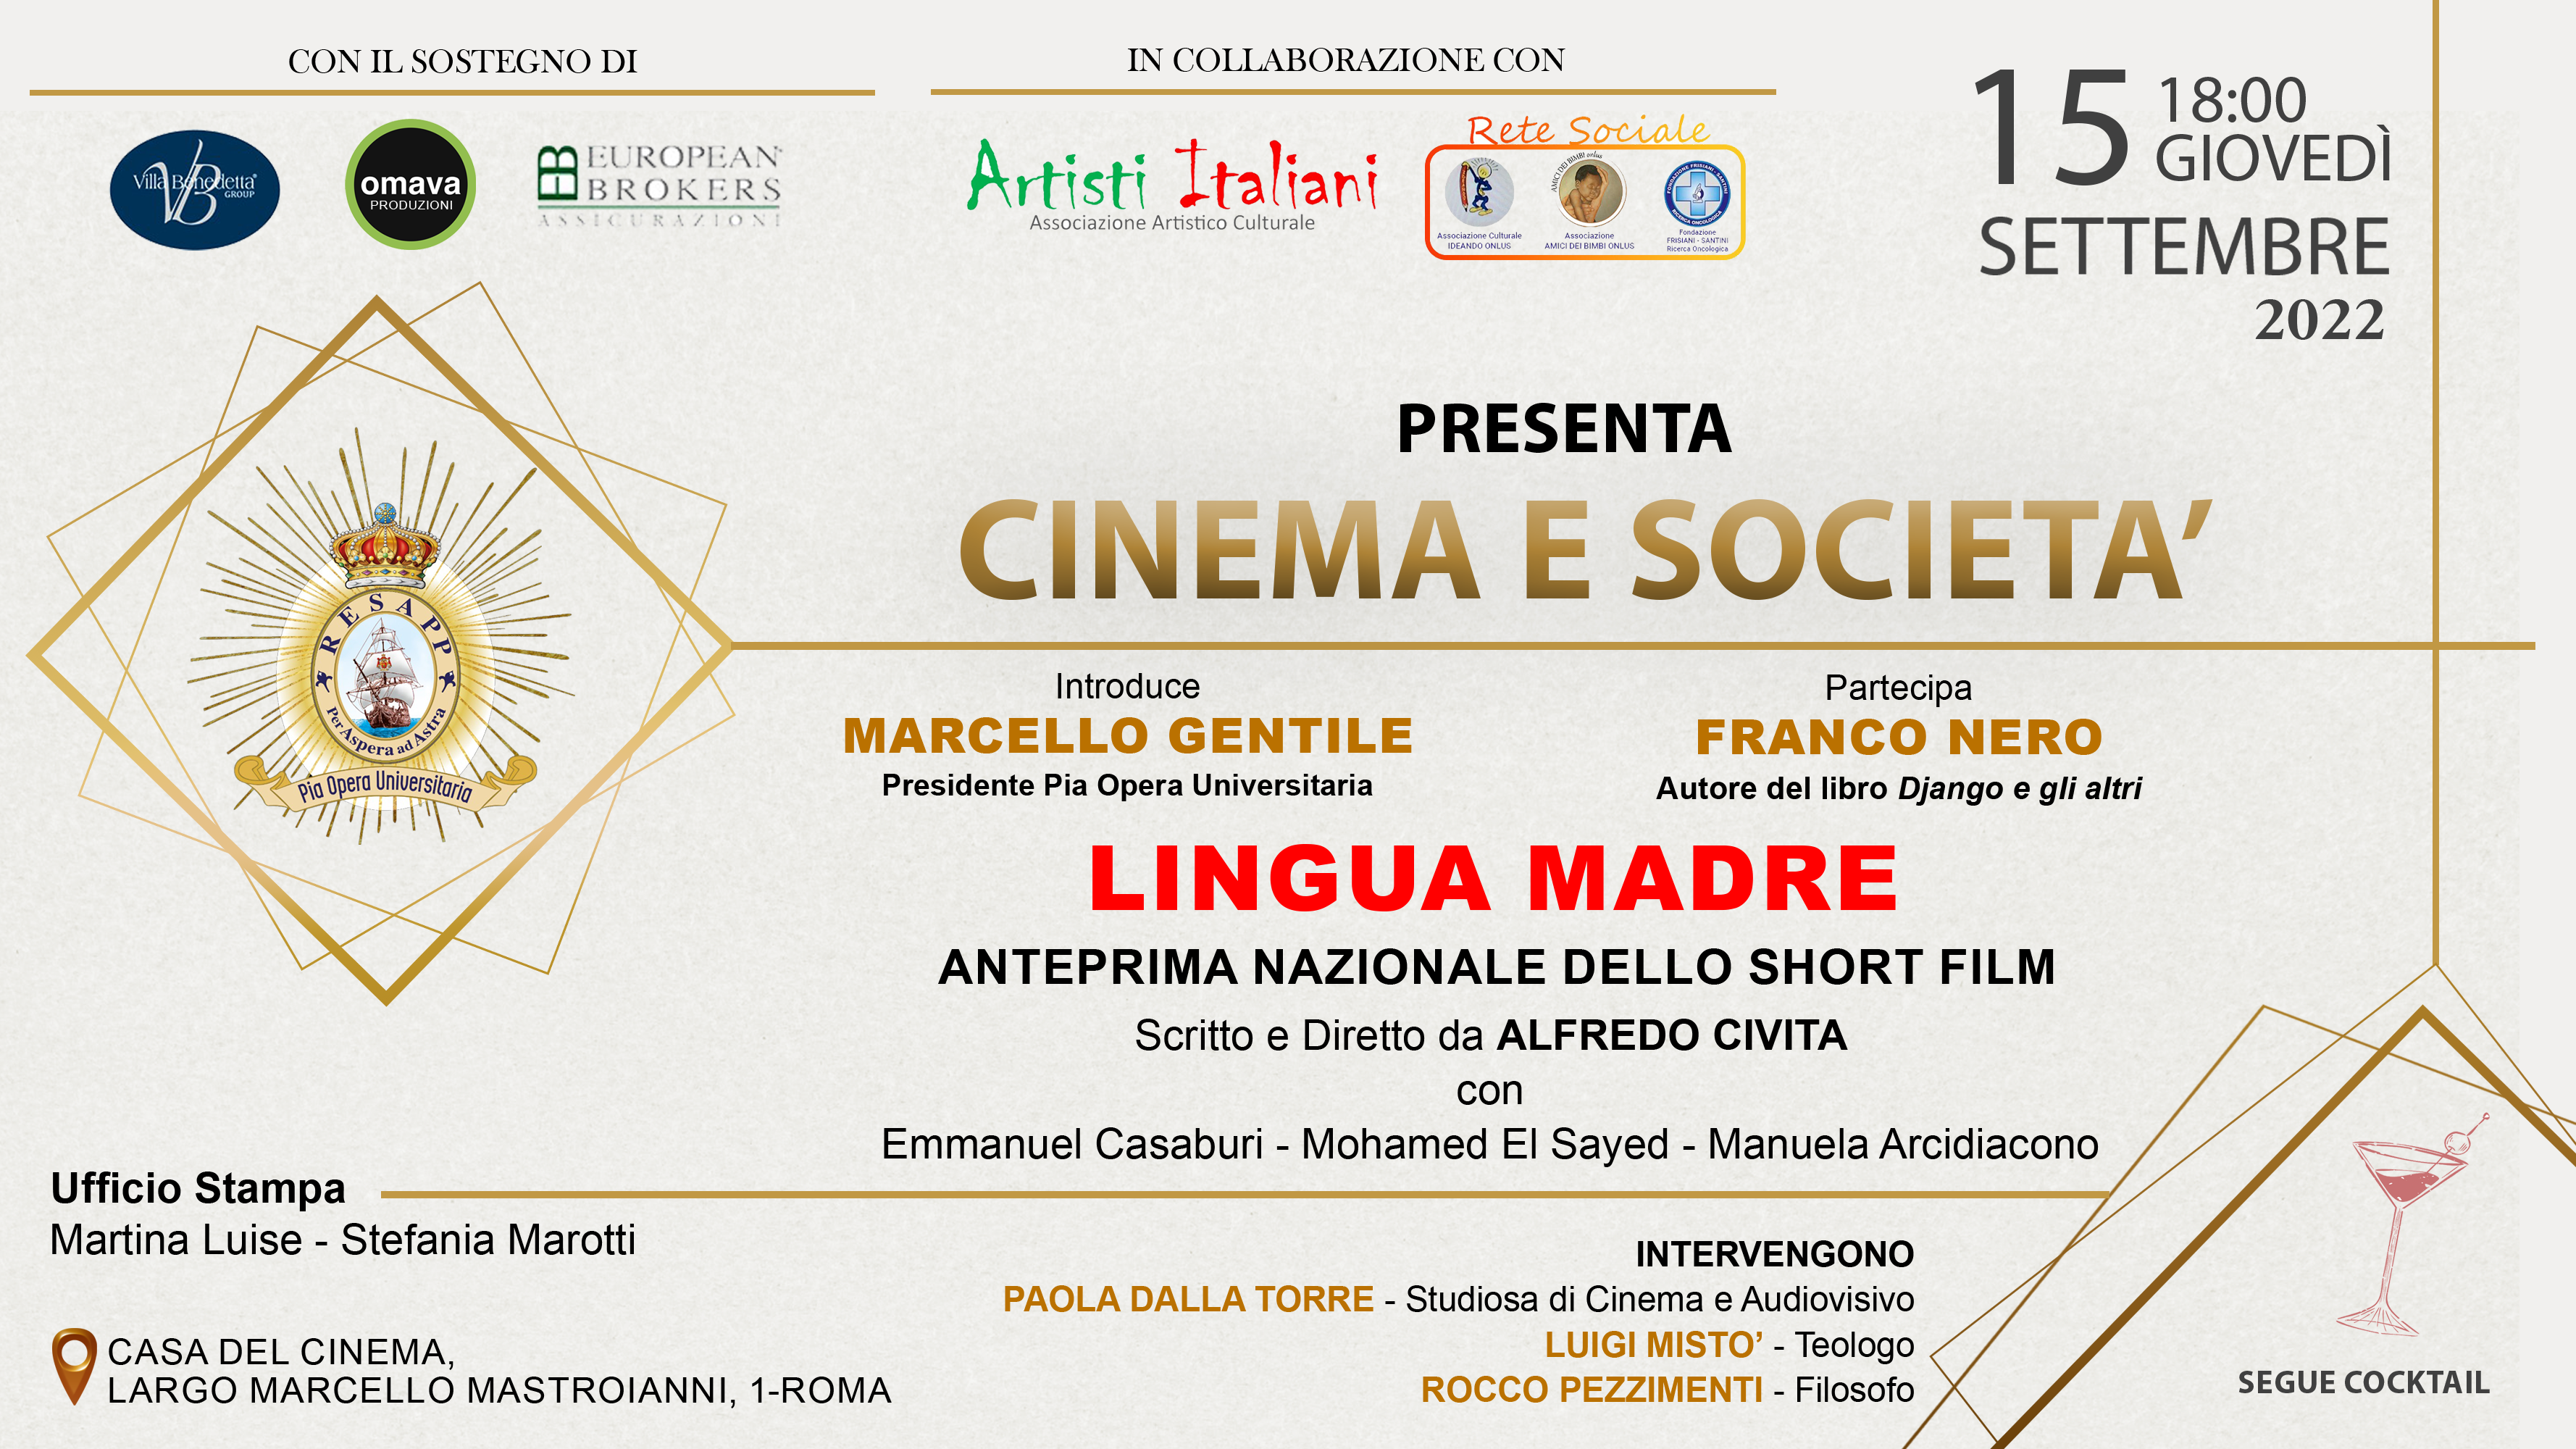 European Brokers sponsor dell’evento alla Casa del Cinema “CINEMA E SOCIETA’”